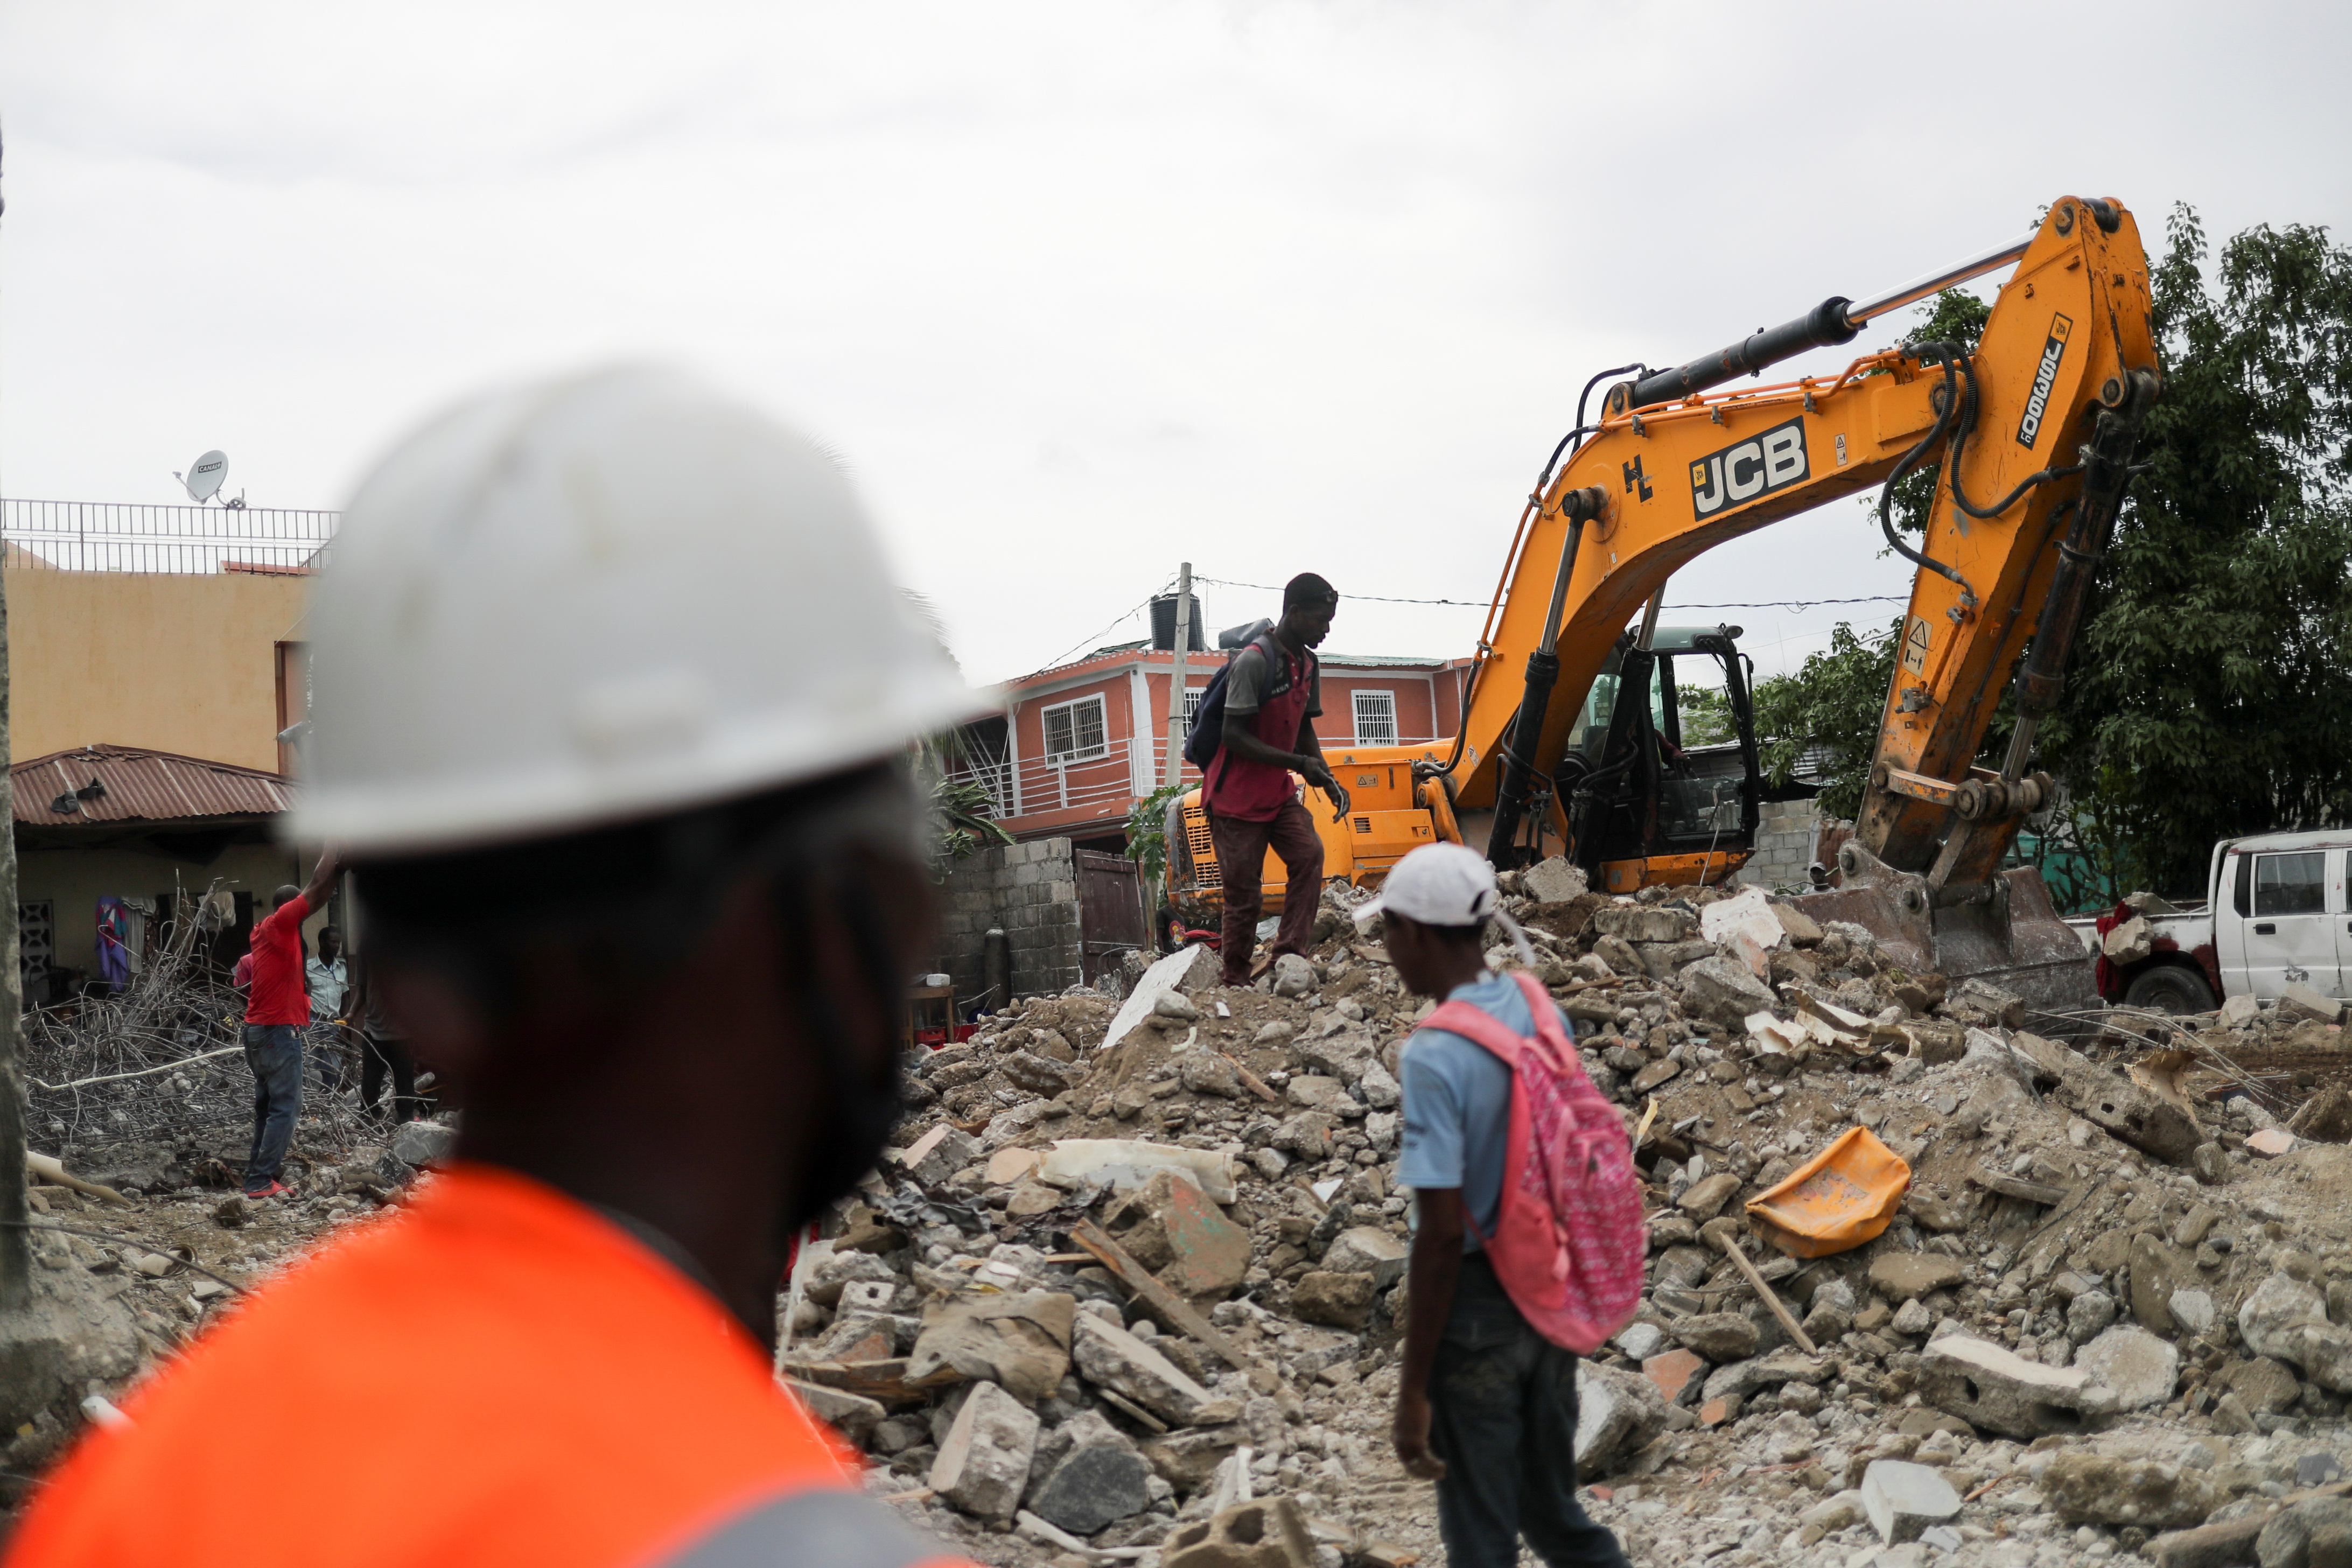 Casas destruidas, luego del terremoto ocurrido el 14 de agosto, en Les Cayes, Haití (Foto: Reuters).